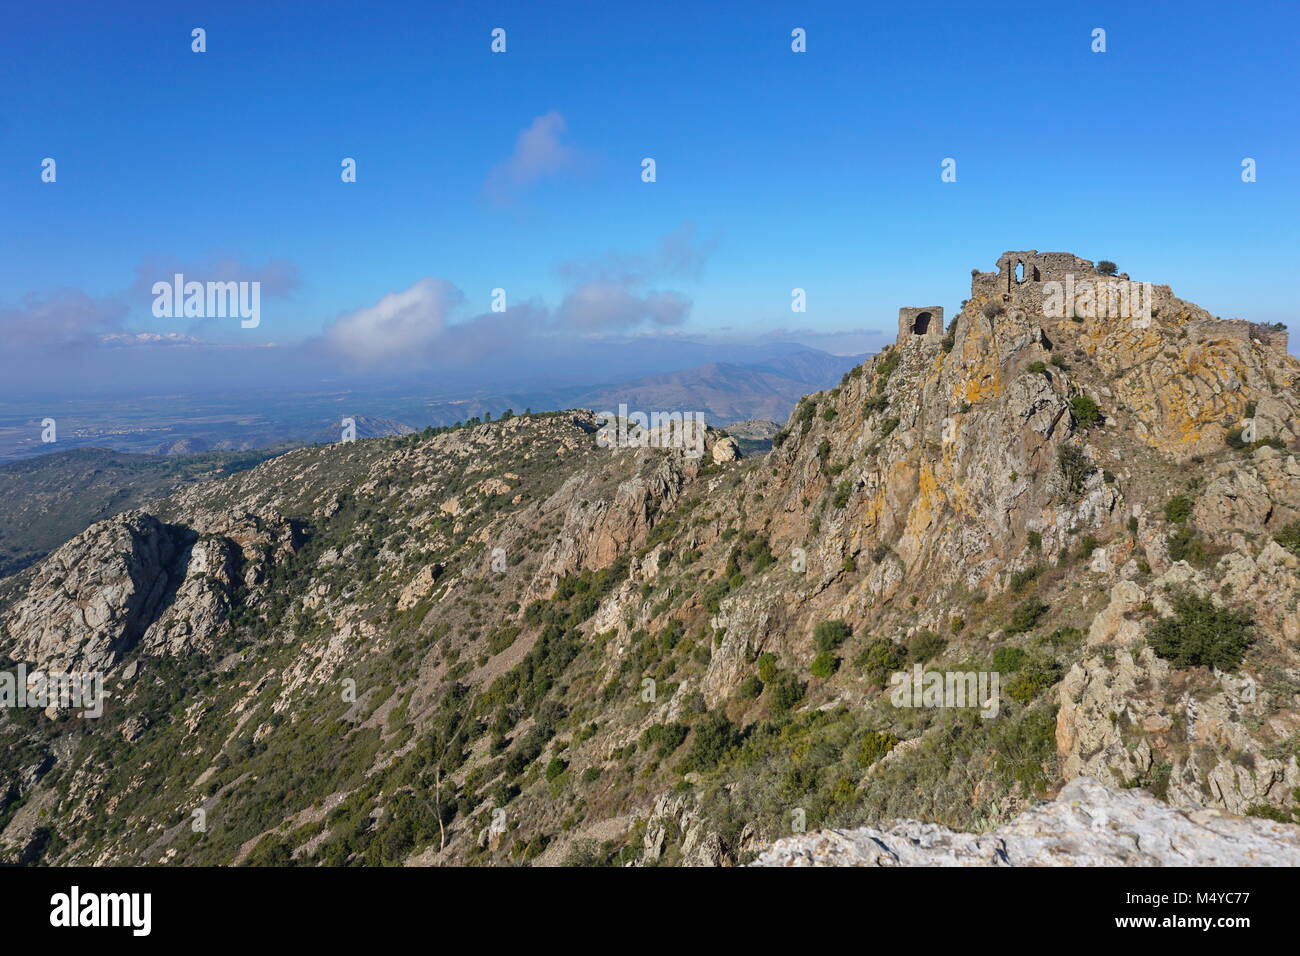 Paisaje desde la cima de la montaña de Sant Salvador Saverdera con las ruinas del castillo de Verdera, España, Cataluña Alt Emporda, Girona Foto de stock